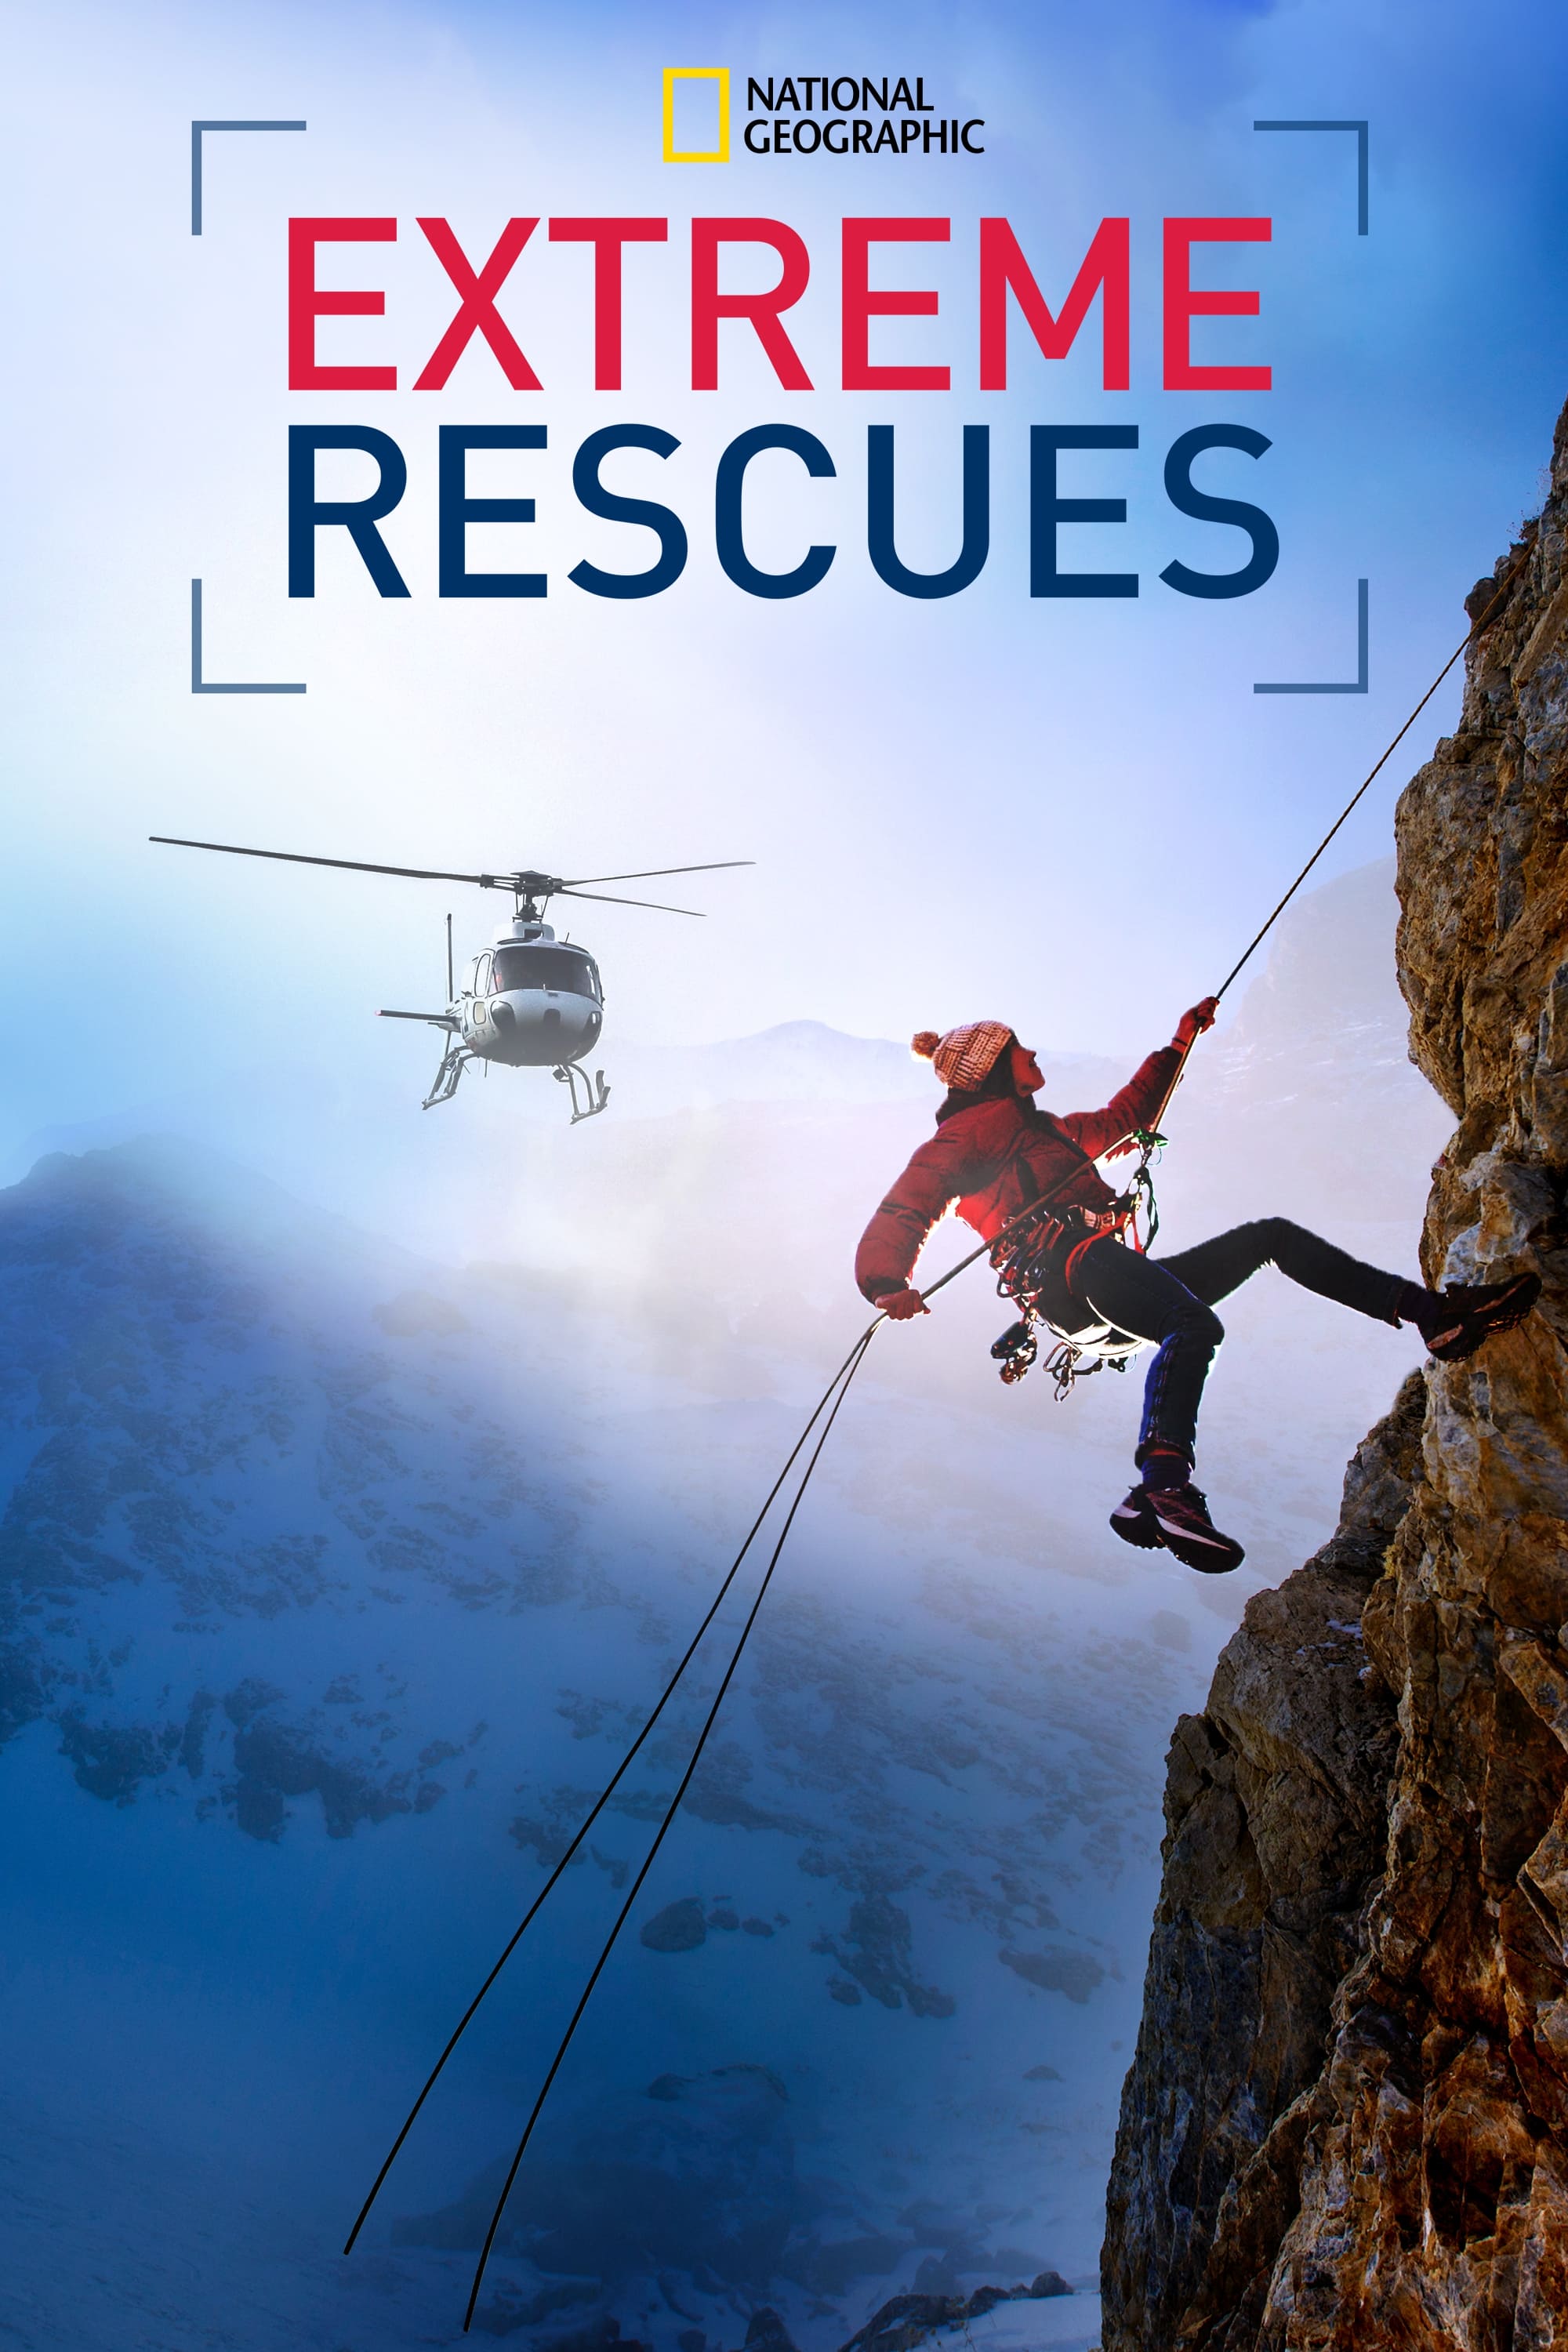 Caratula de Extreme Rescues (Rescates extremos) 